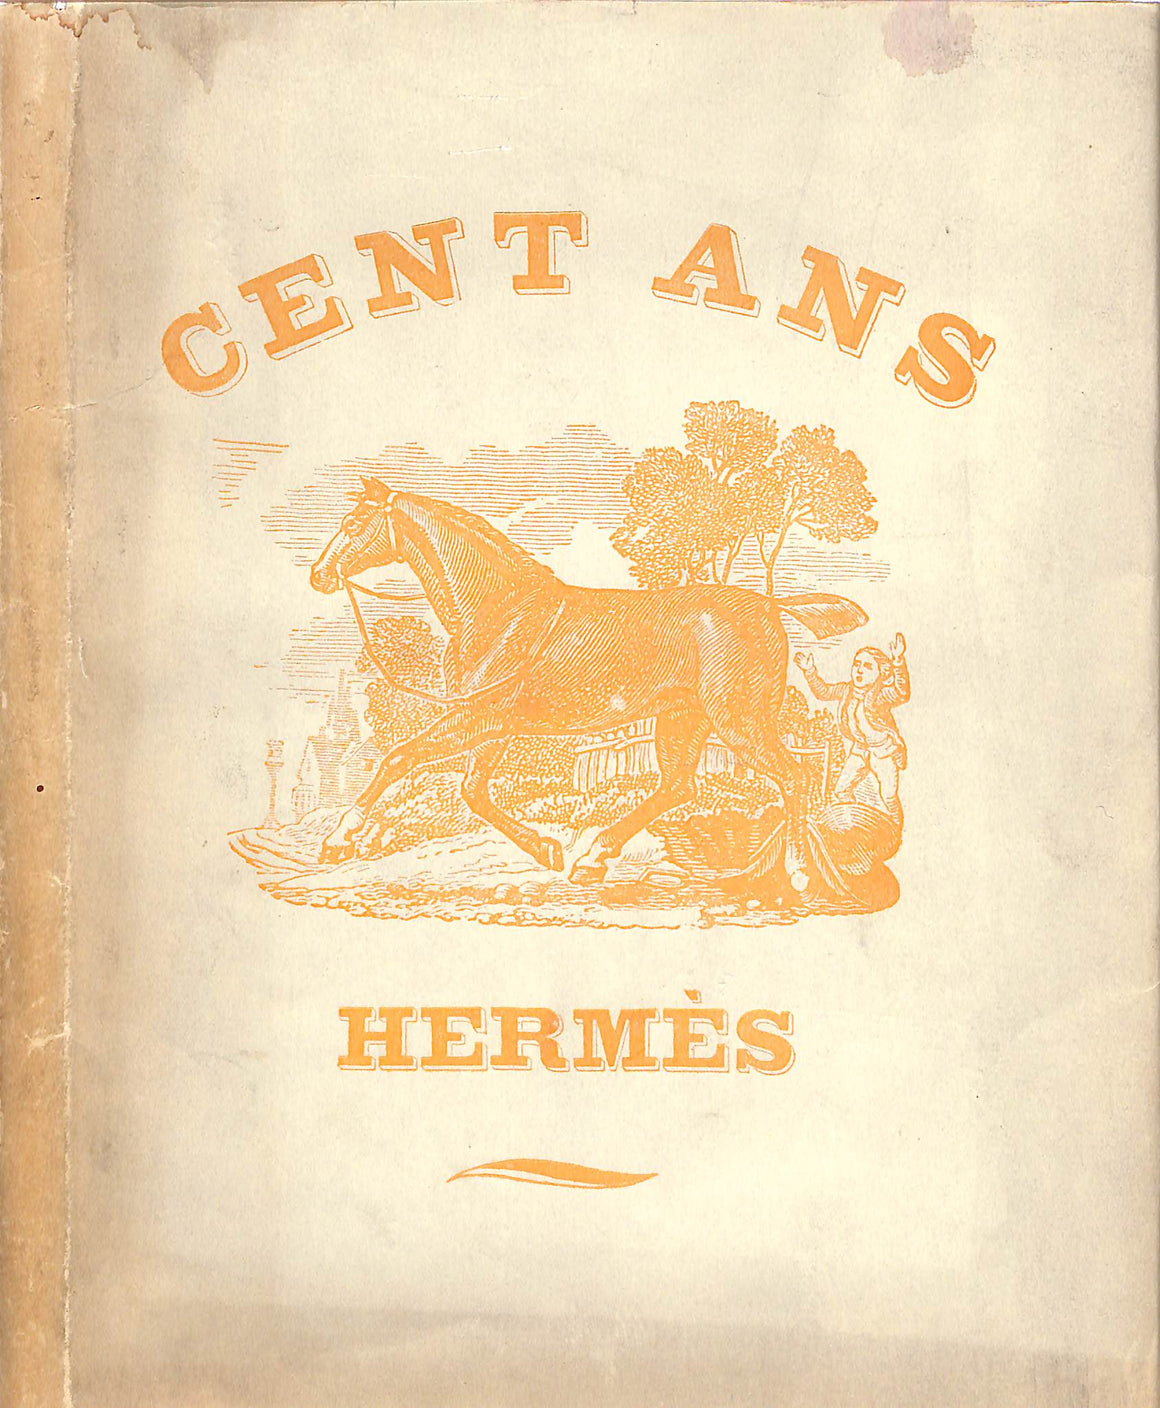 Cent Ans Ou Quelques Reflexions Sur La Collection Particuliere De M.H Hermes 1928 Hermes Sellier Paris